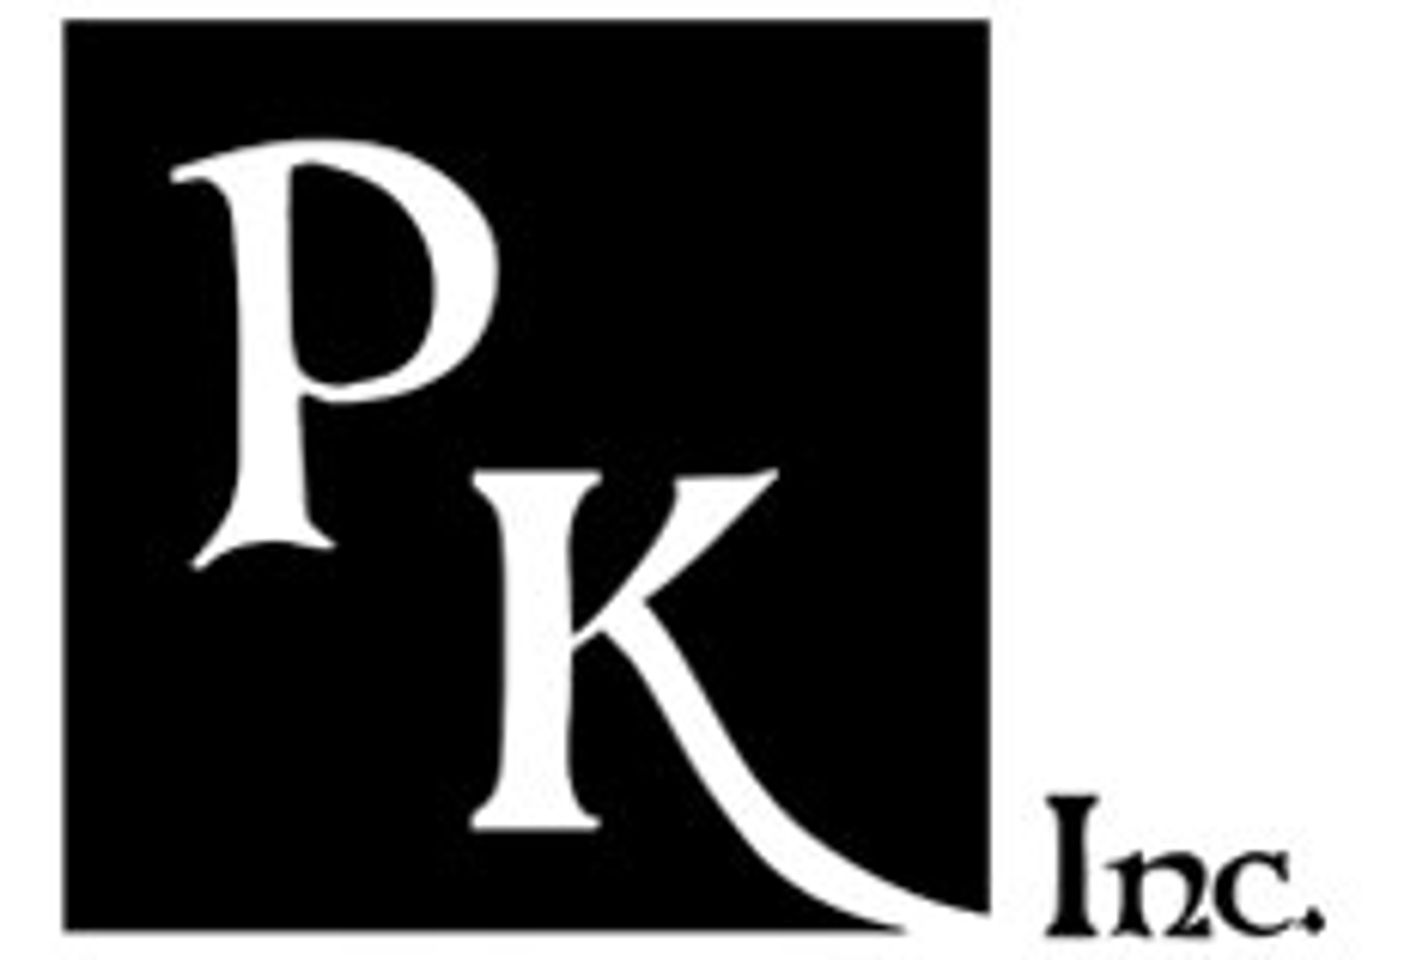 Peekay, Inc. Opens New Lovers Store in Silverdale, Wash.